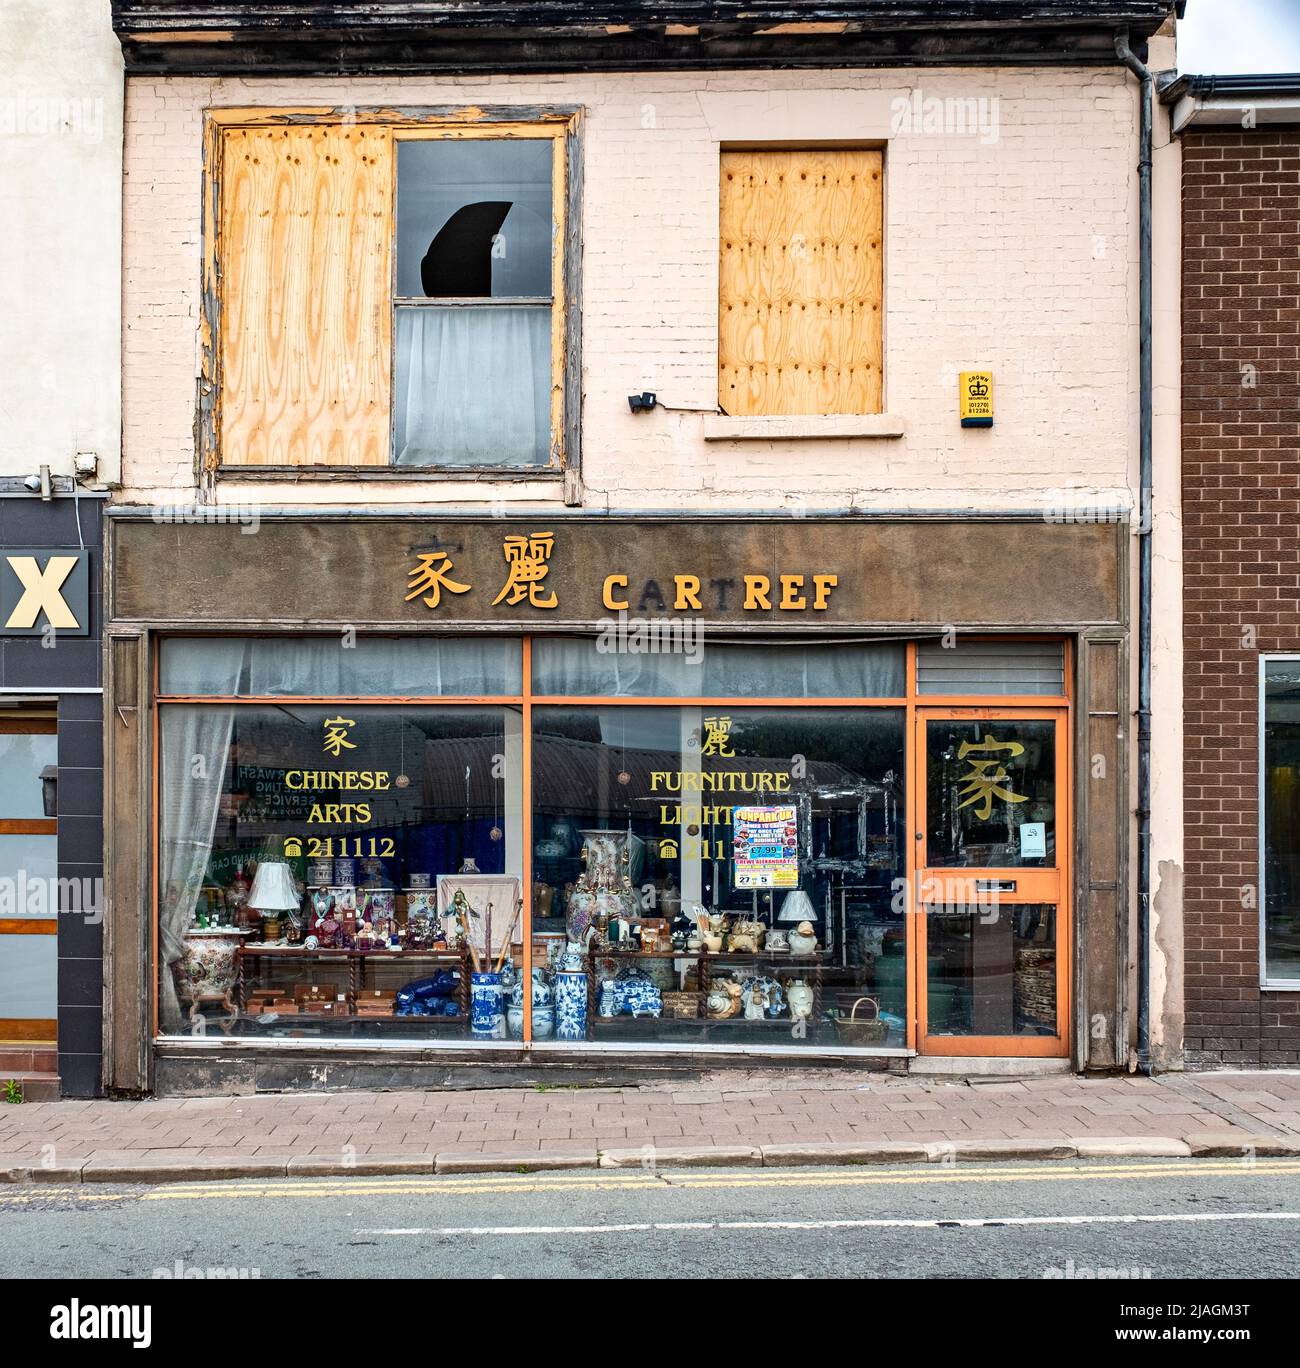 La tienda de iluminación y muebles de arte chino Cartref cerrada en Crewe Cheshire Reino Unido Foto de stock